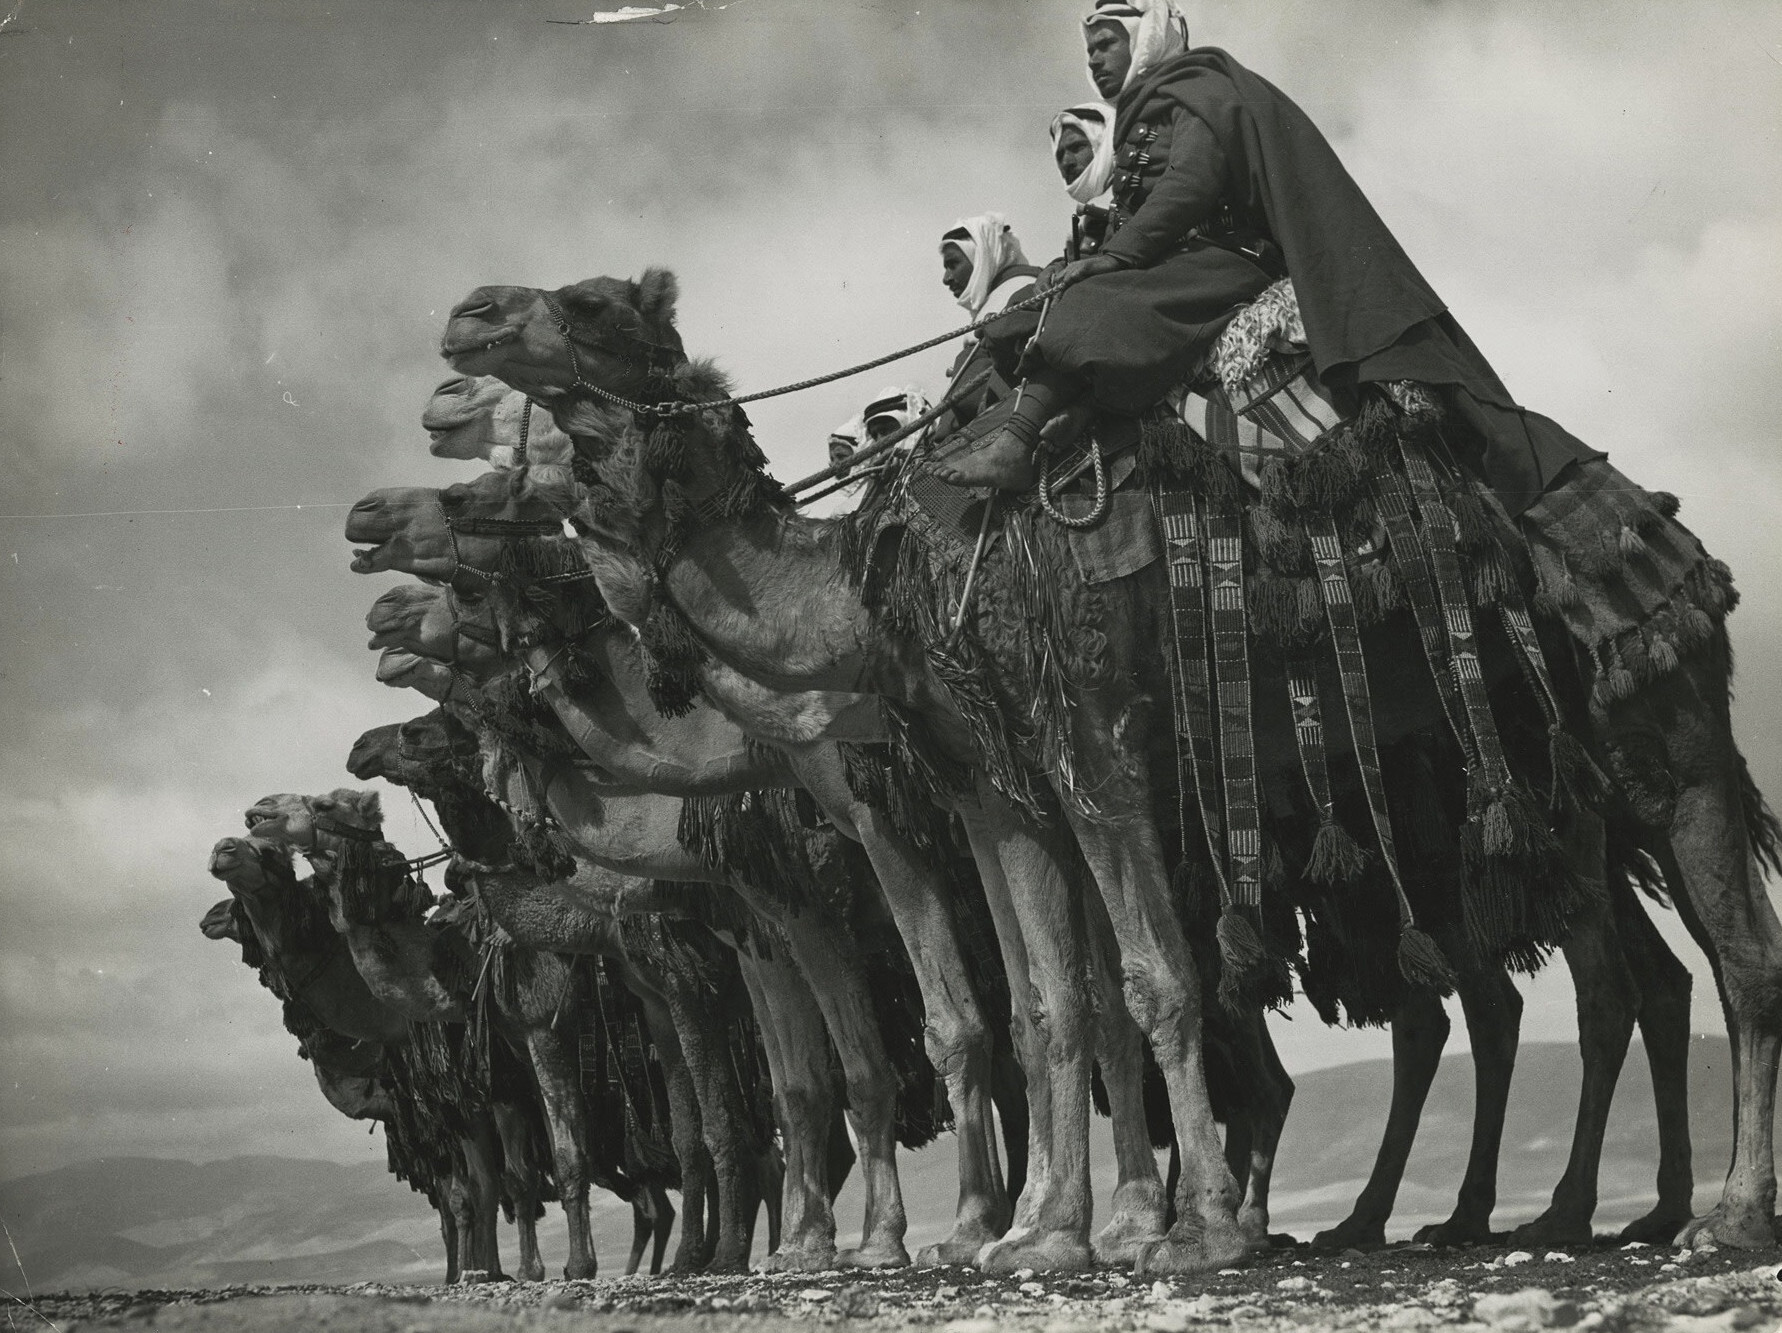 Члены местной бедуинской верблюжьей кавалерии, которой командуют французские экспедиционные силы, позируют на своих верблюдах в пустыне близ Дамаска, Сирия, 1940 год. Фотограф Маргарет Бурк-Уайт